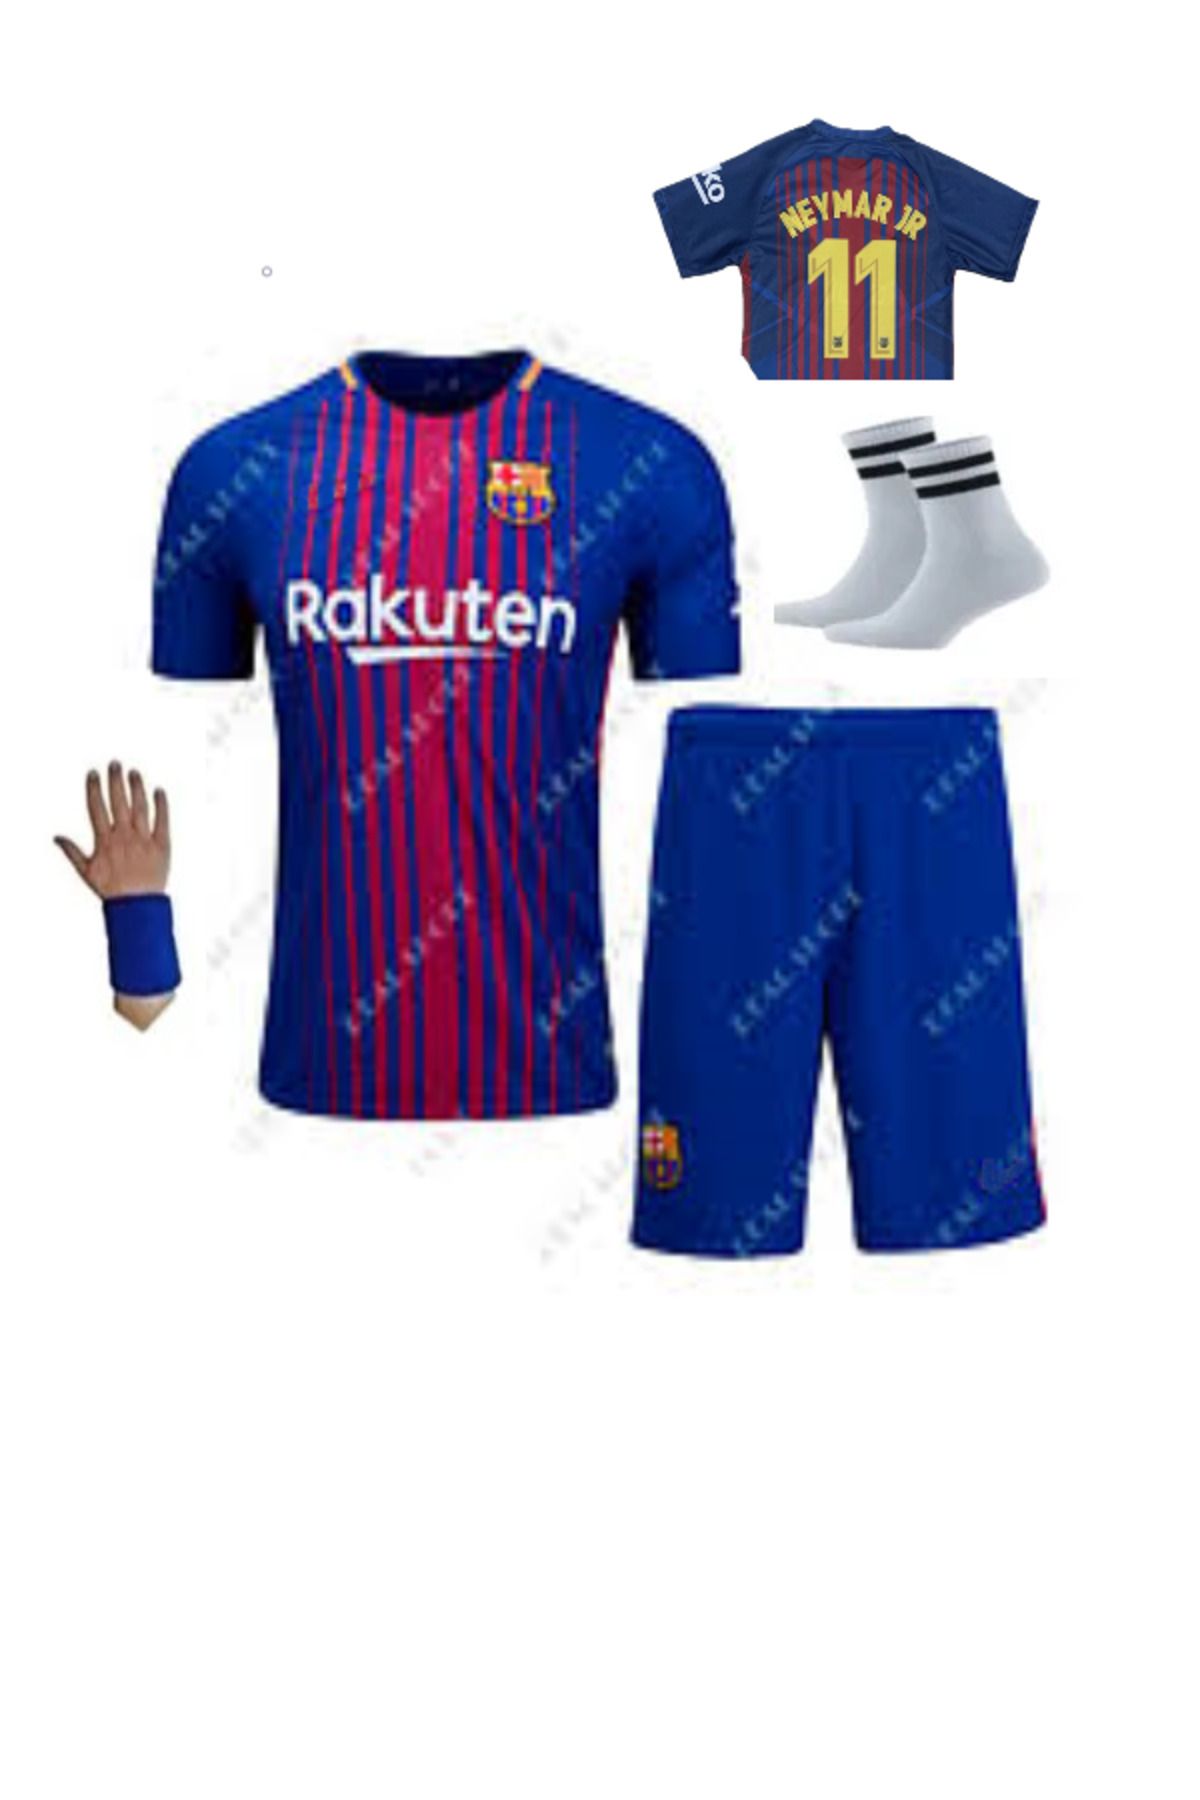 yenteks Neymar Jr 2018 Barcelona Retro Çocuk Forması 4 Parça Forma Şort Çorap Bileklik